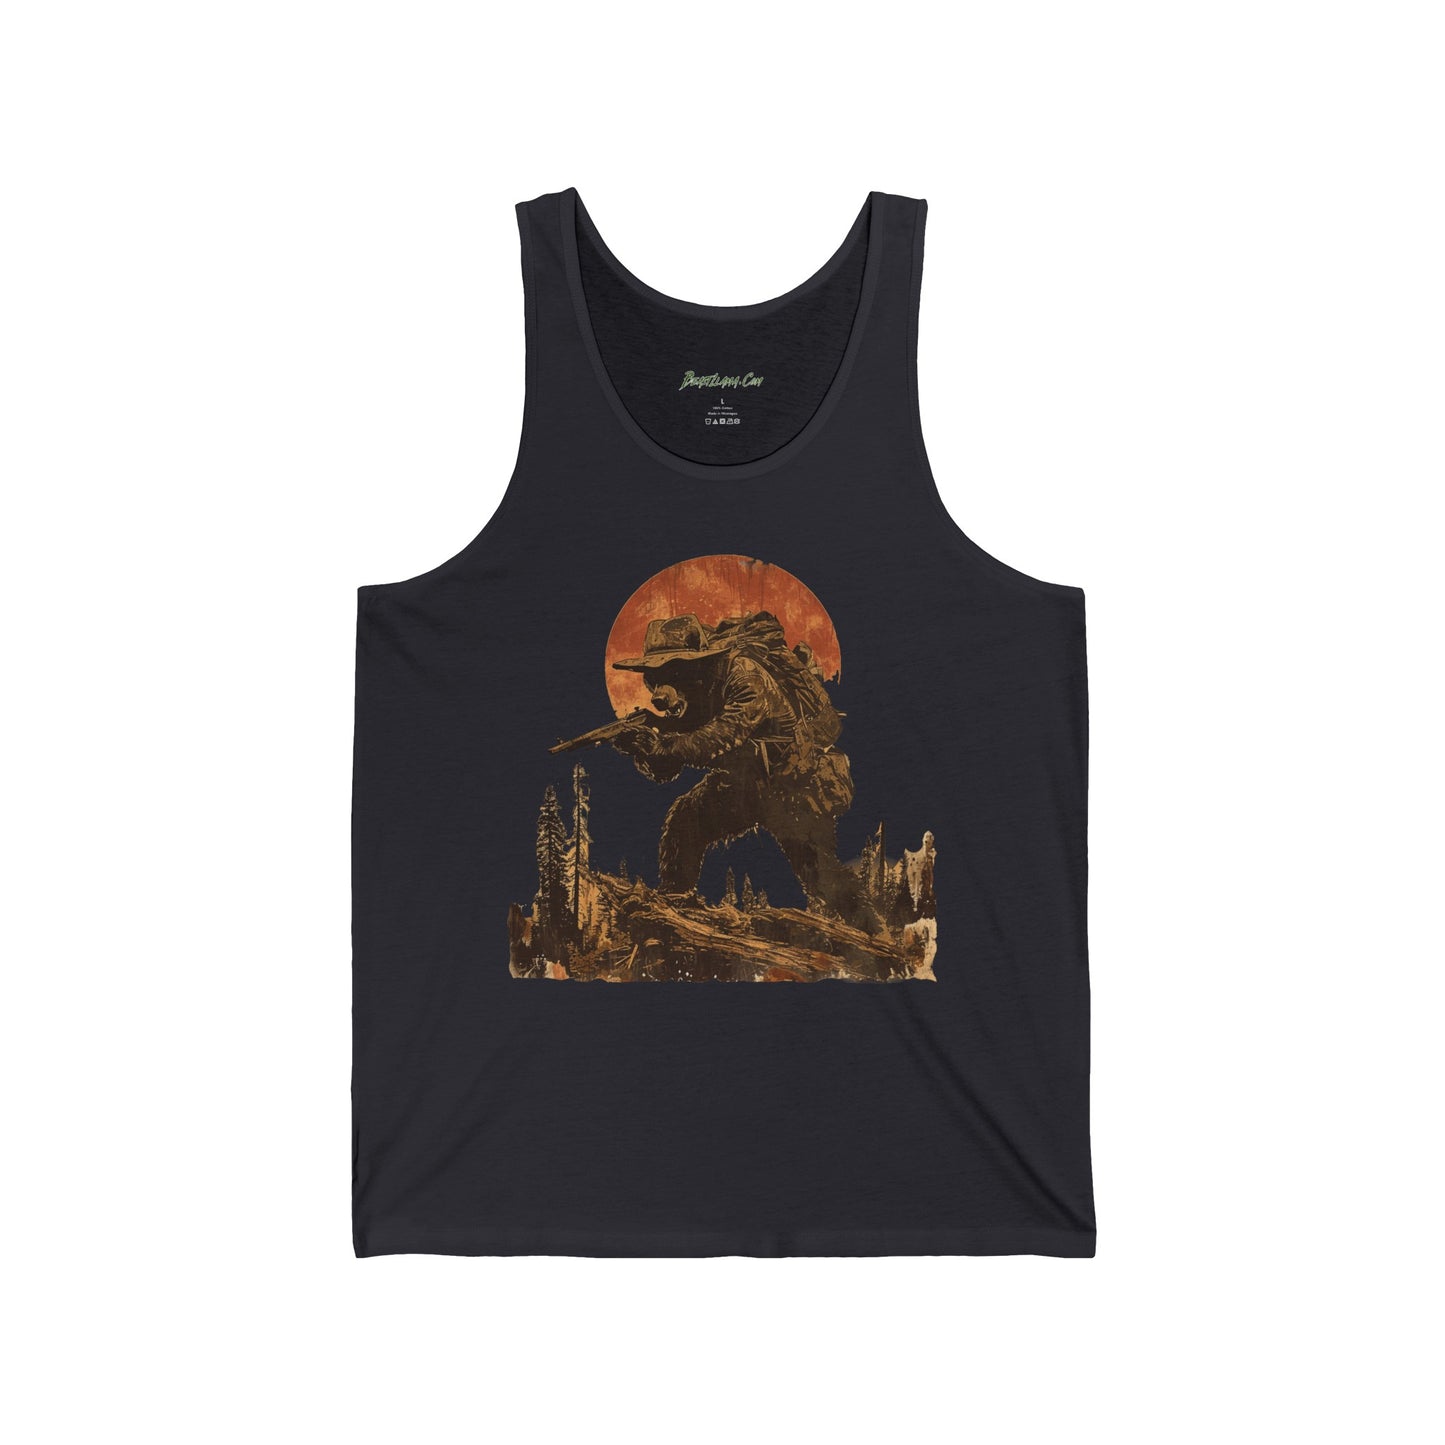 "Ranger Bear: Guardian of the Wilderness" T-Shirt